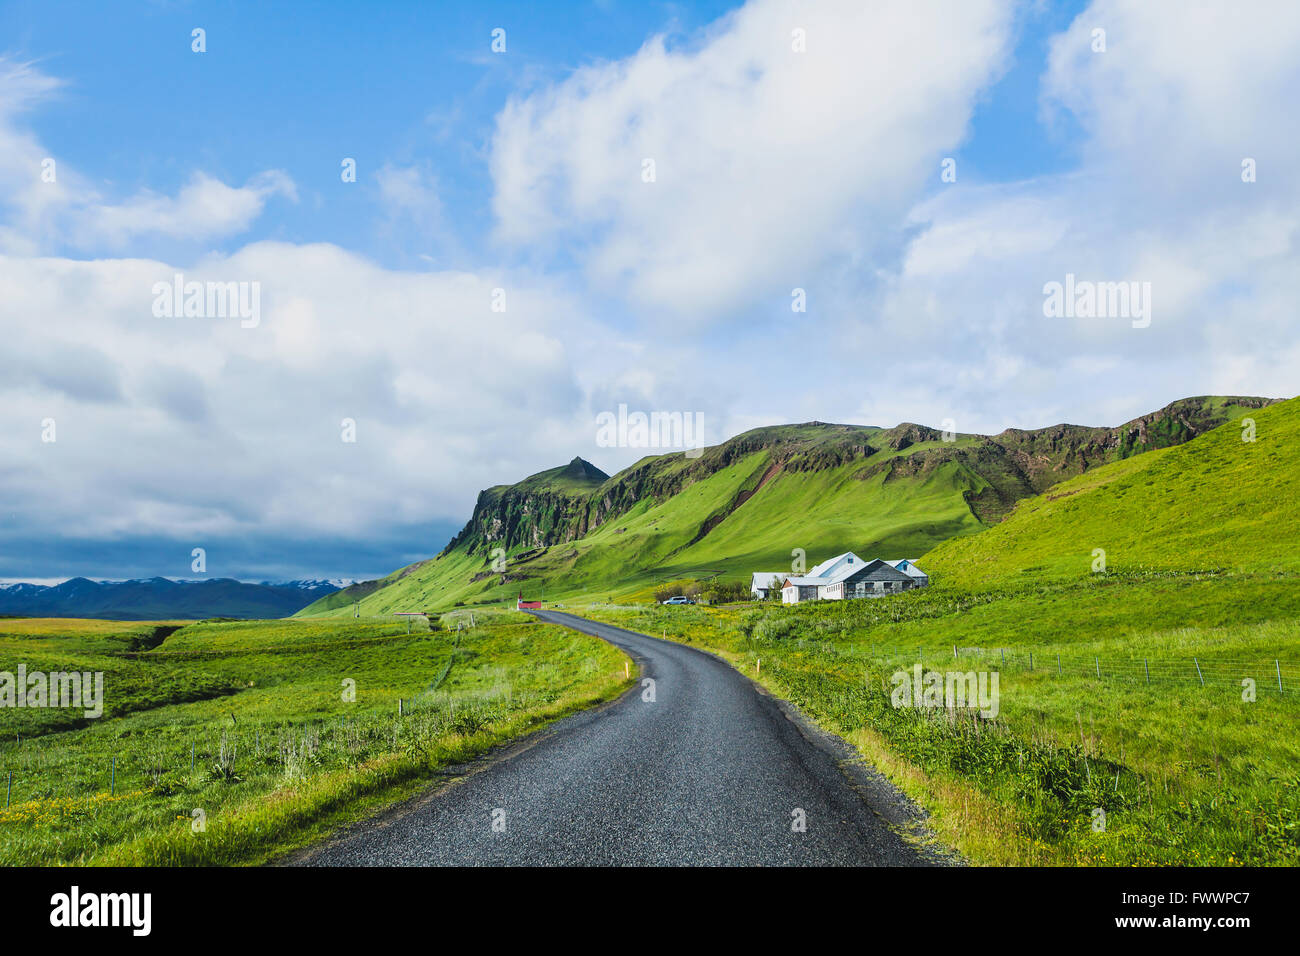 schöne asphaltierte Straße im grünen Tal, Reisekonzept, Sommerlandschaft aus Island Stockfoto